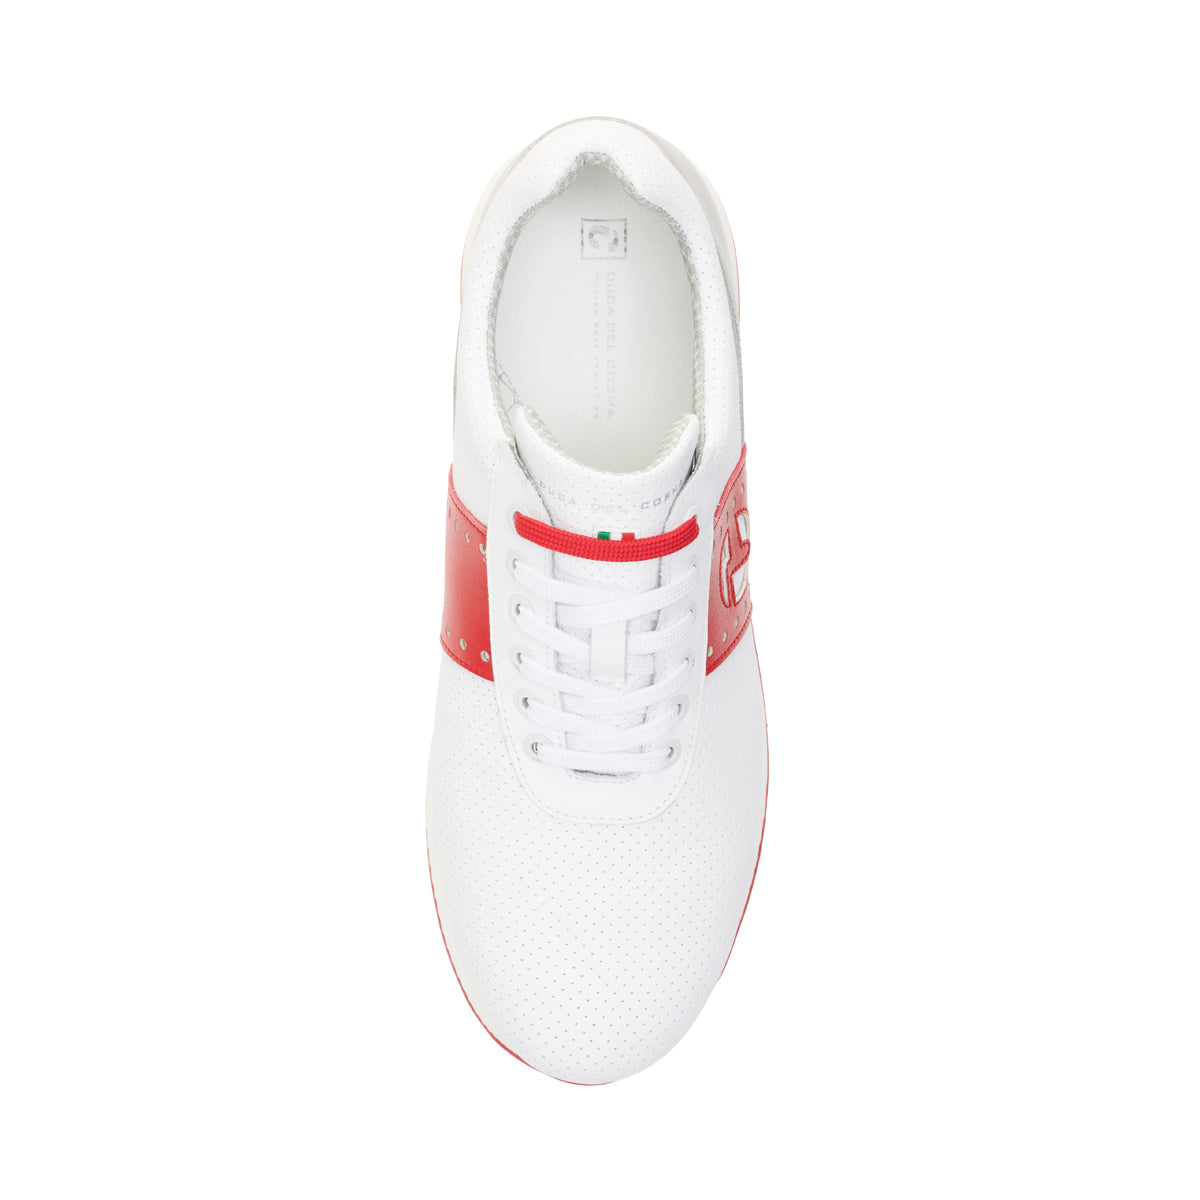 Belair White/Grey/Red Men's Golf Shoe